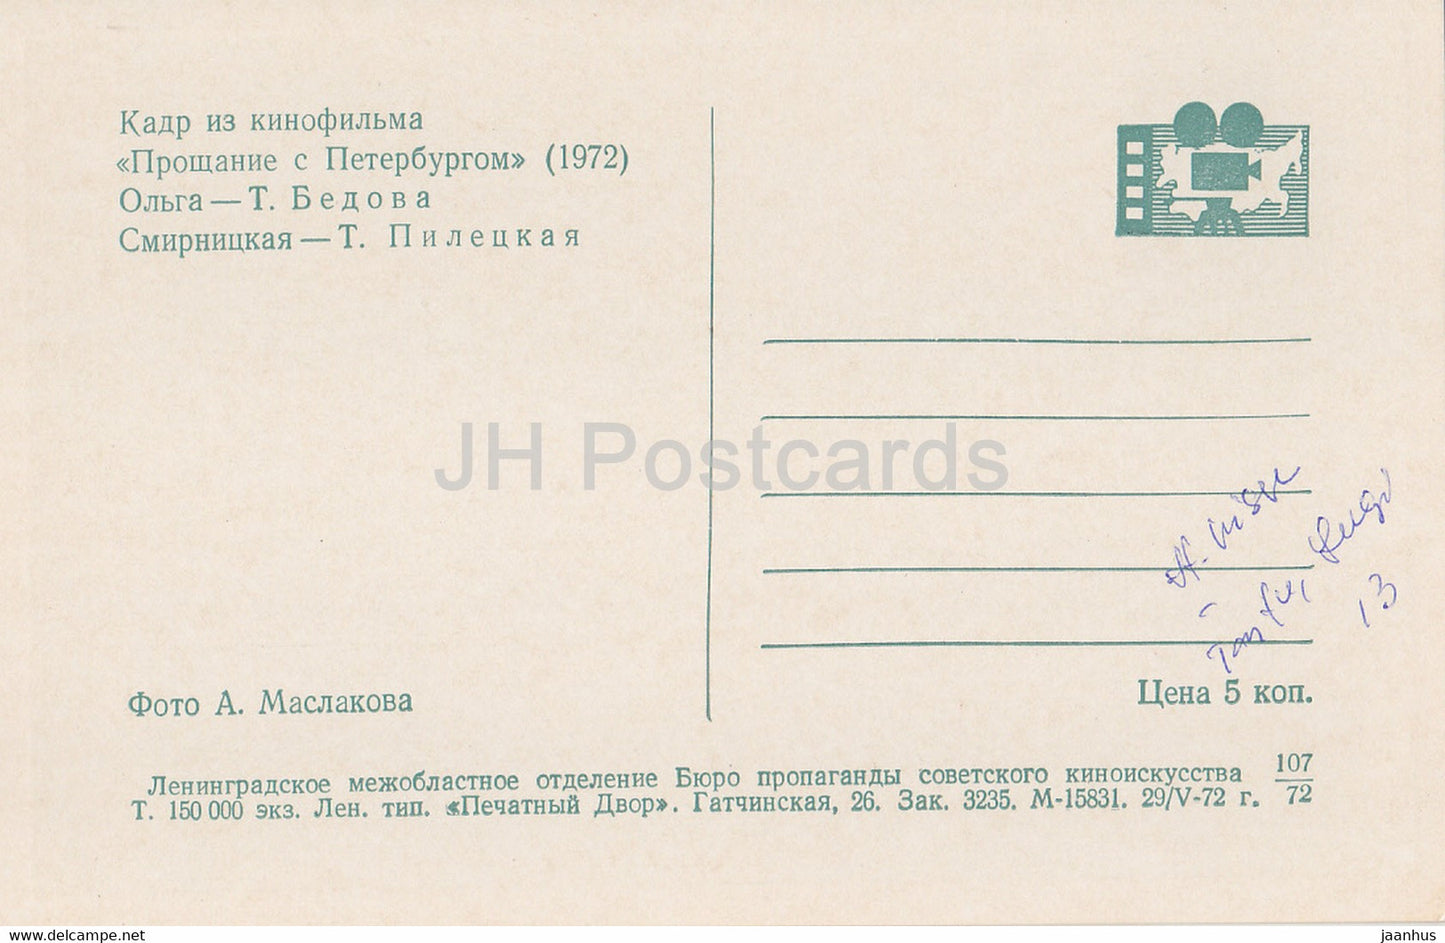 Abschied von St. Petersburg – Schauspielerin T. Bedova T. Piletskaya – Film – Film – Sowjet – 1972 – Russland UdSSR – unbenutzt